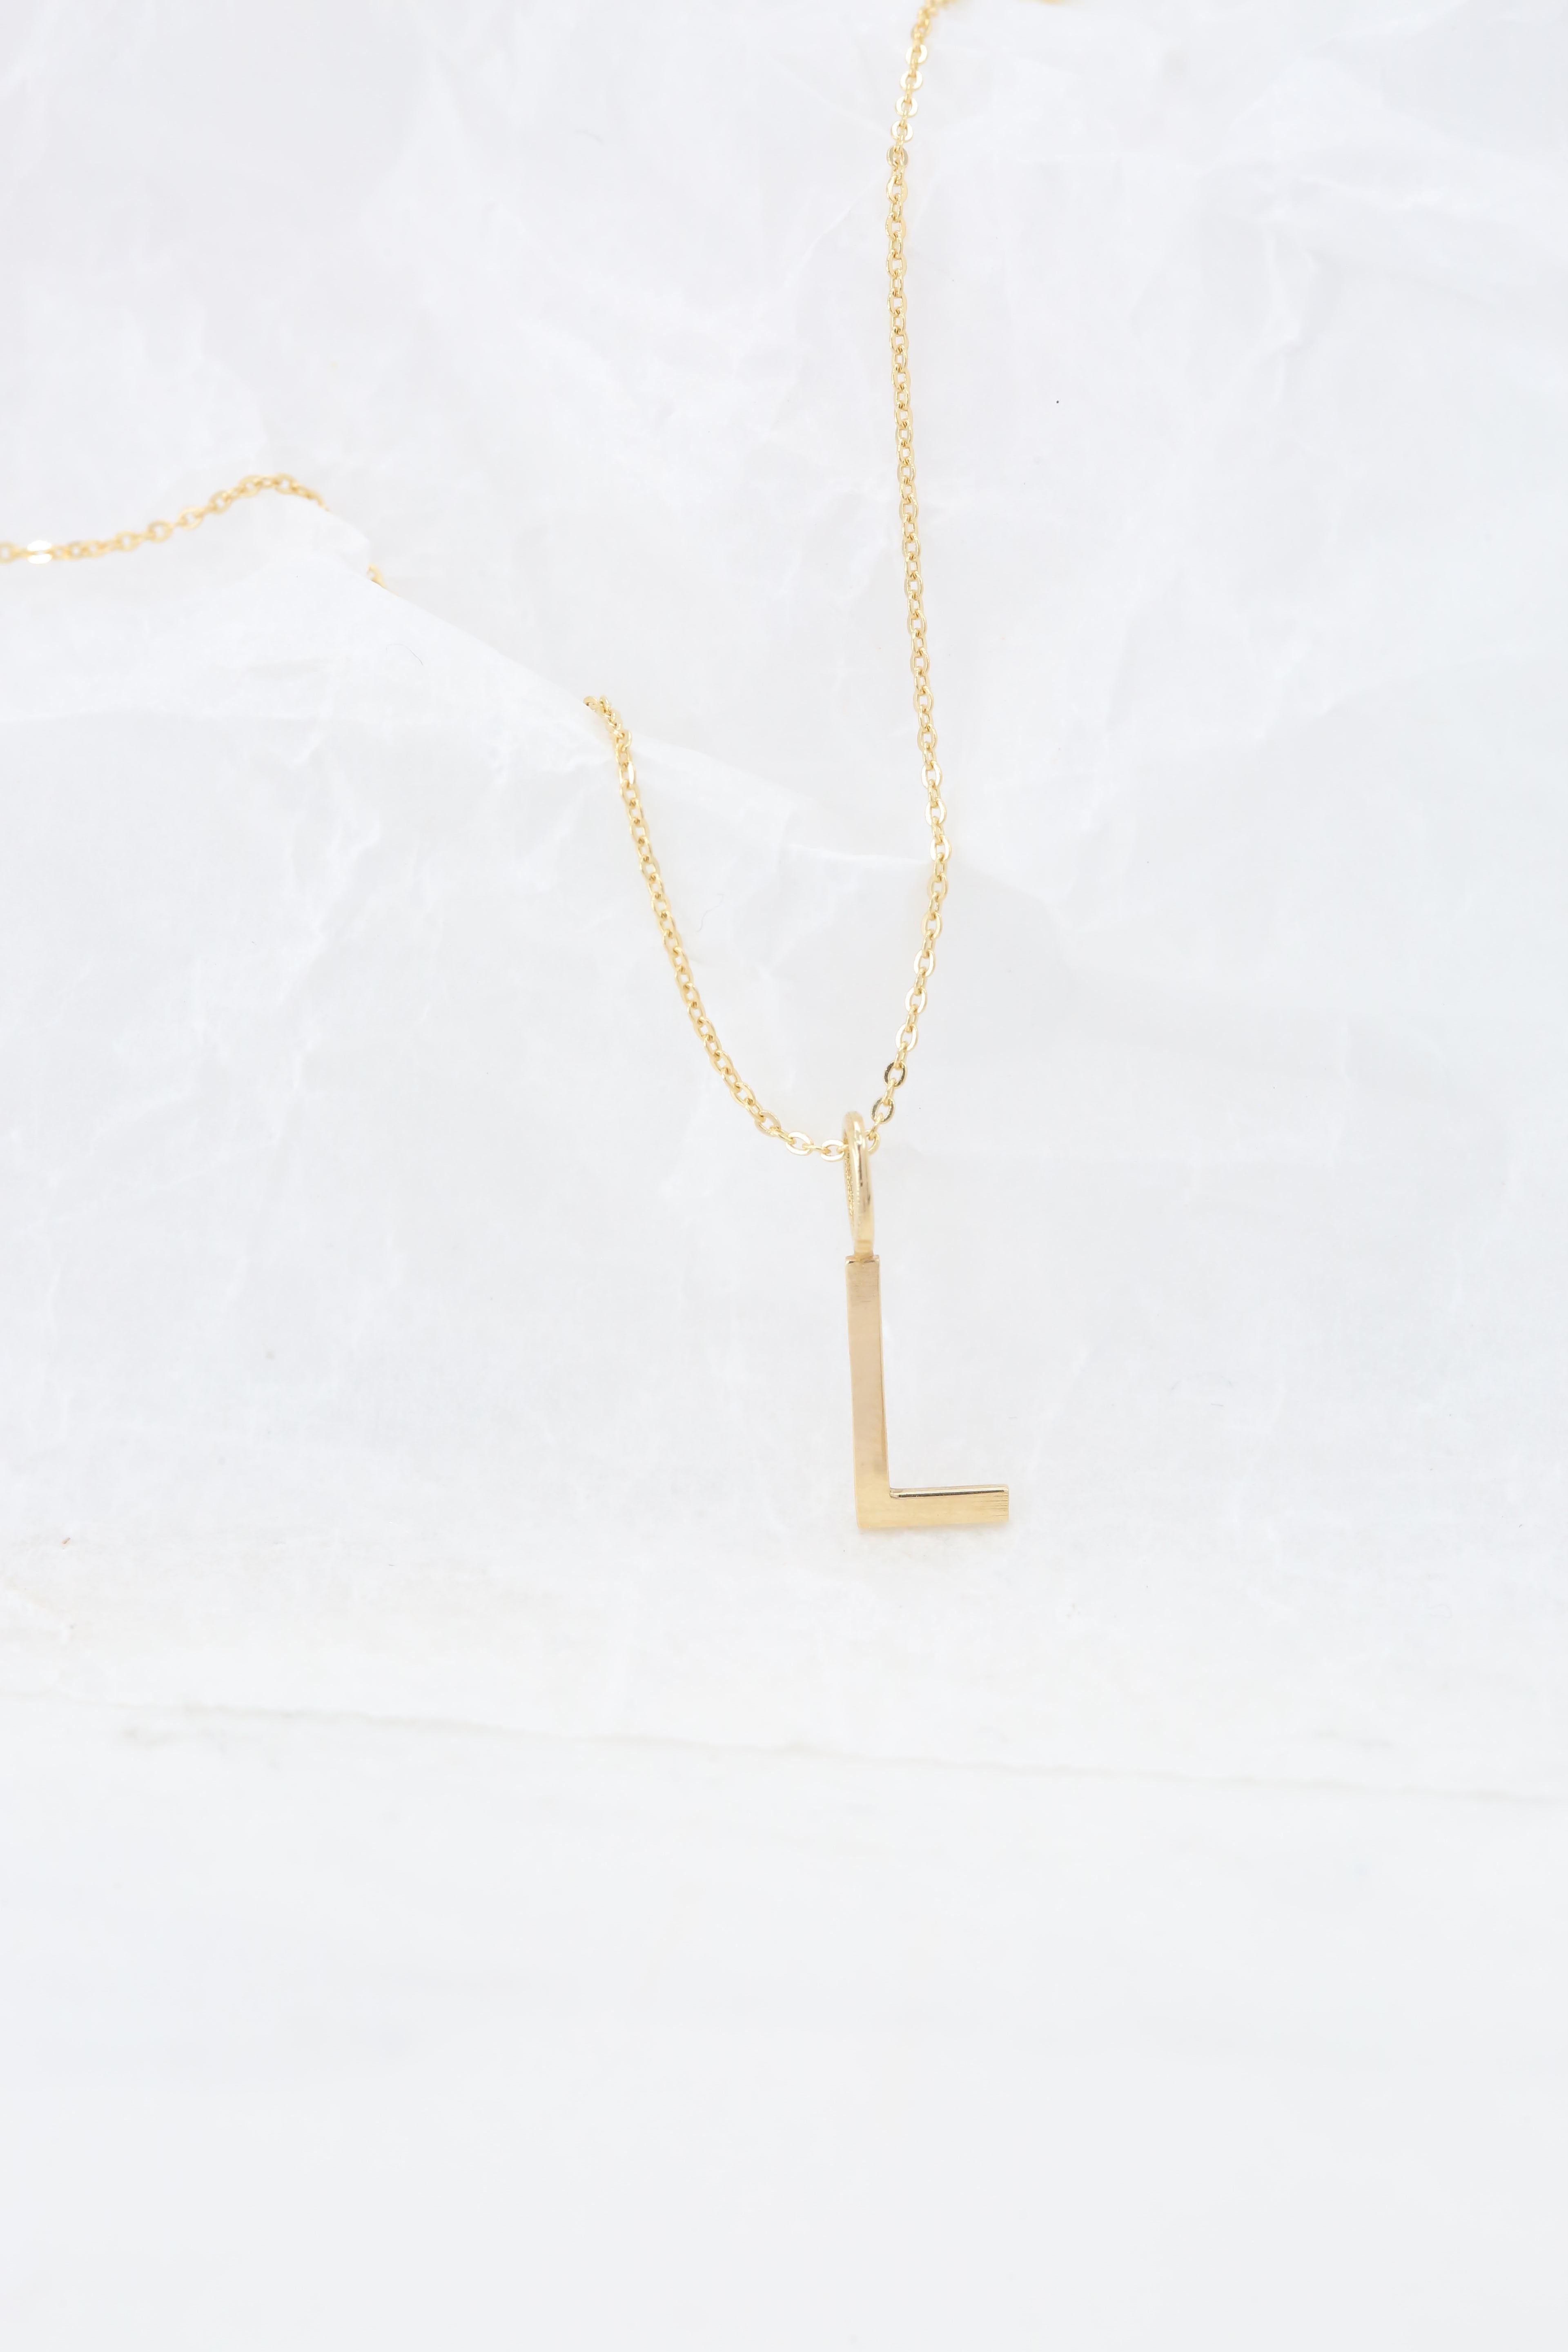 Modern 14k Gold Necklaces, Letter Necklace Models, Letter L Gold Necklace-Gift Necklace For Sale